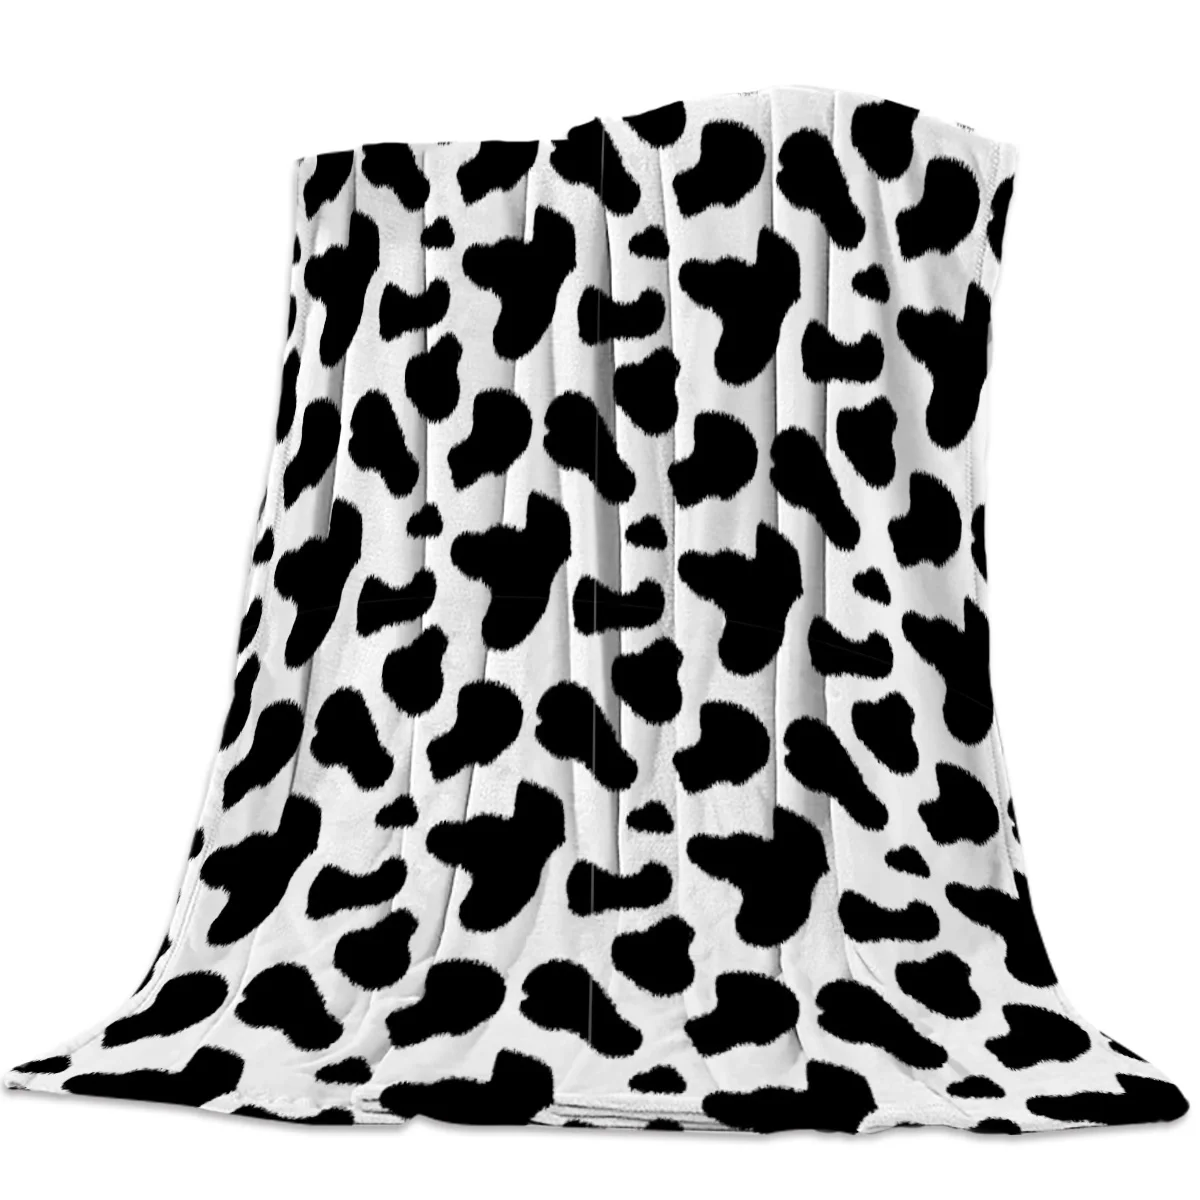 

Kuh Muster Flanell Fleece Bett Decke Bettdecke Bettdecke Bett Abdeckung Weiche Leichte Warme Gemütliche Decken